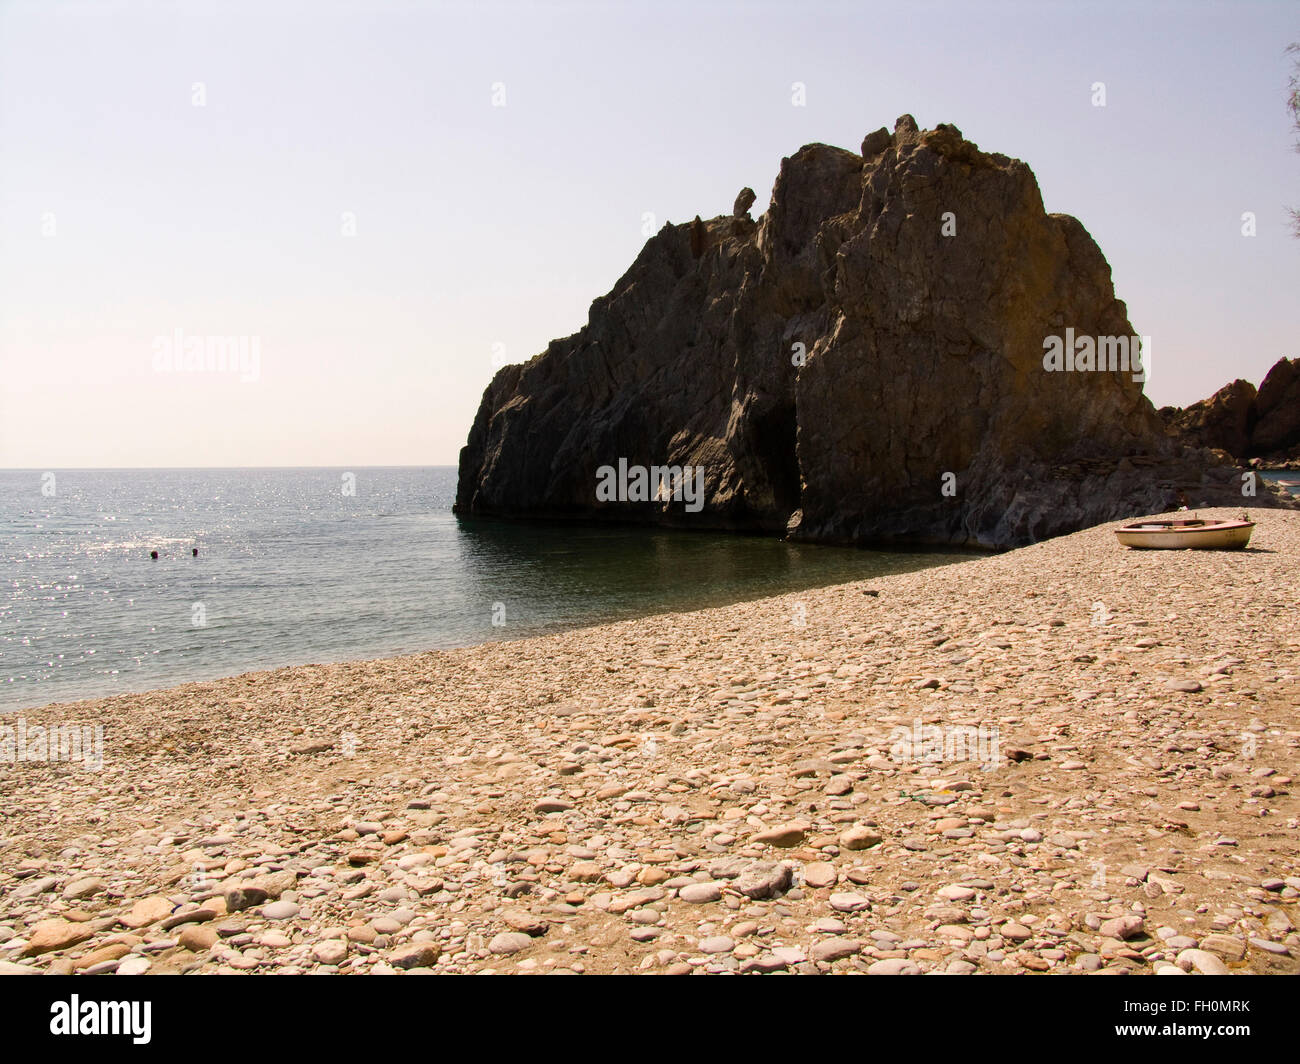 Melinta beach, km 138, l'île de Lesbos, au nord-ouest de la mer Égée, Grèce, Europe Banque D'Images